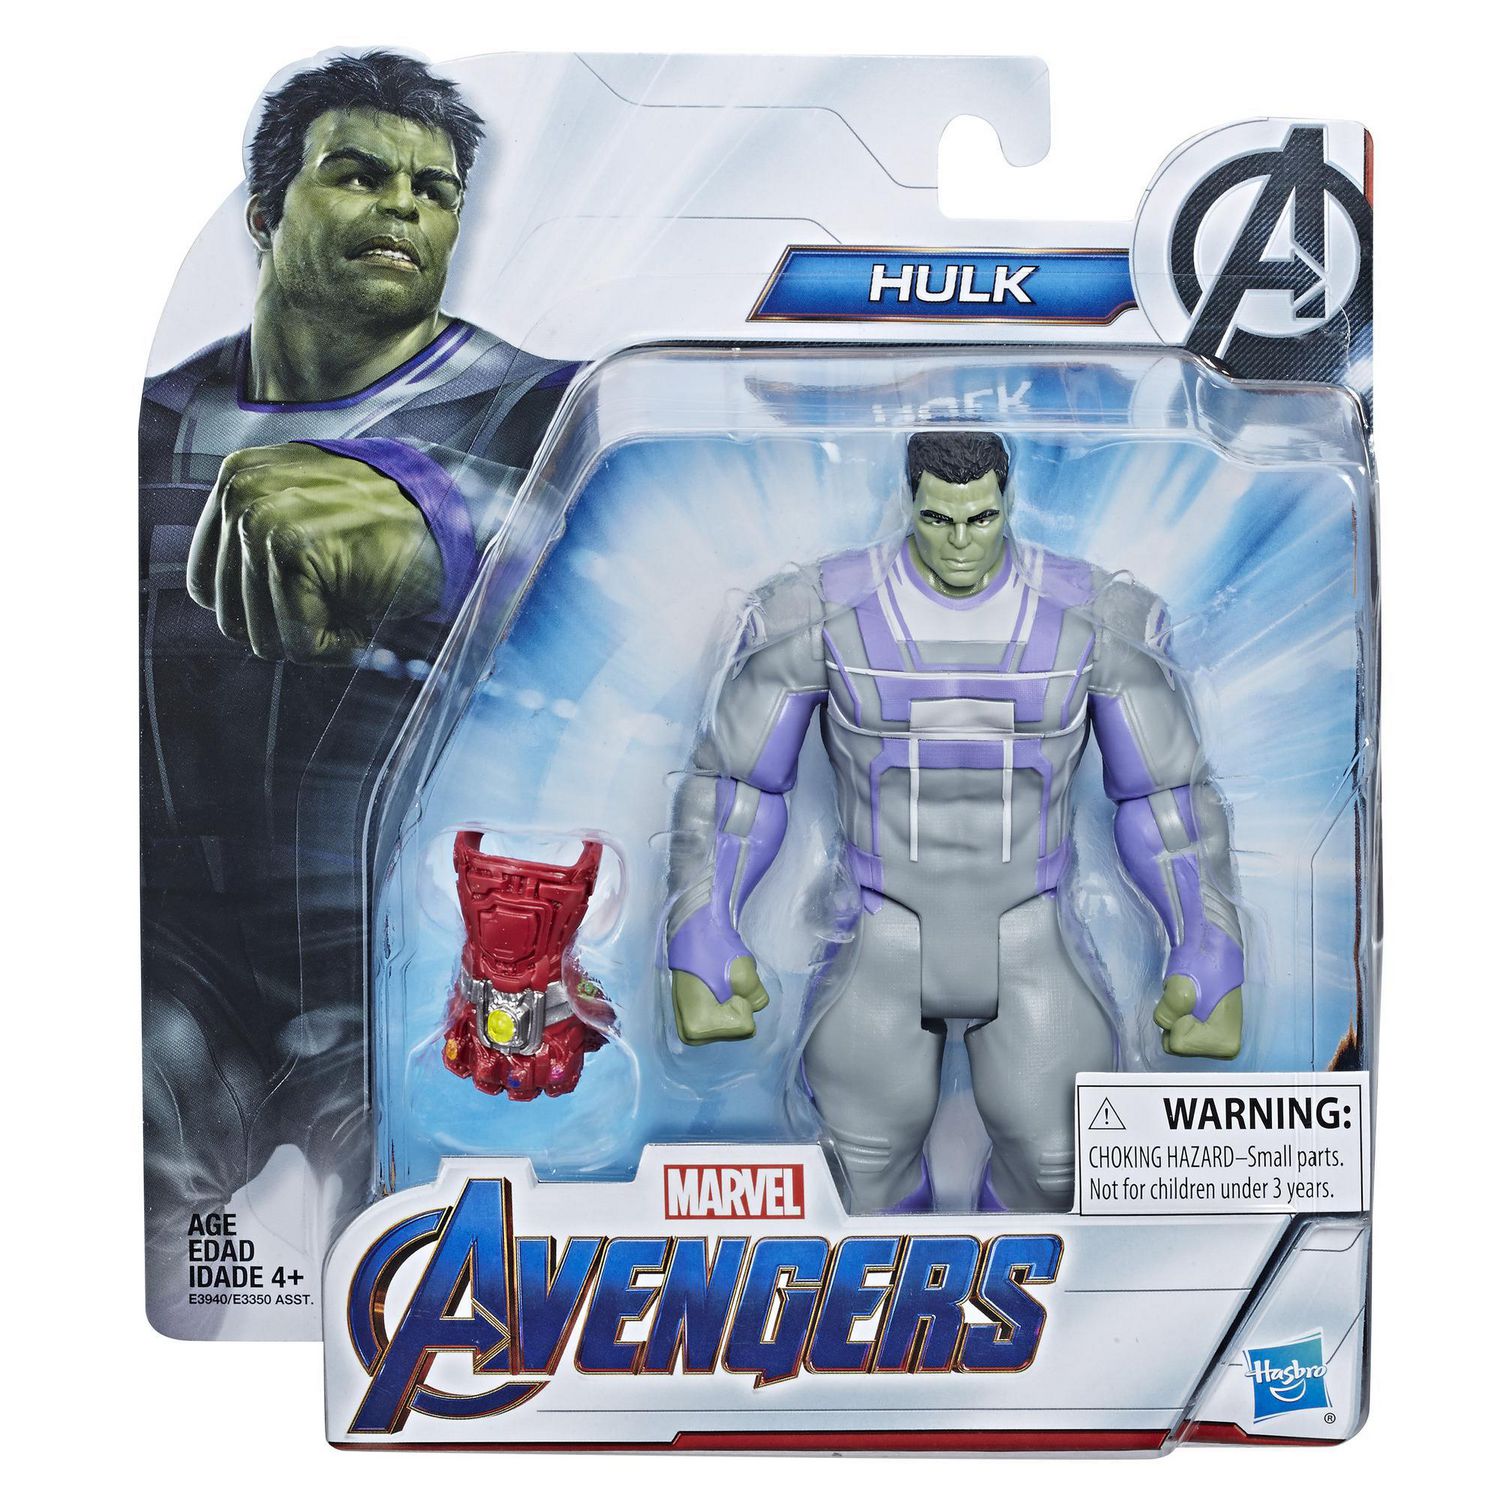 Endgame Deluxe Movie Hulk Action Figure Avengers 